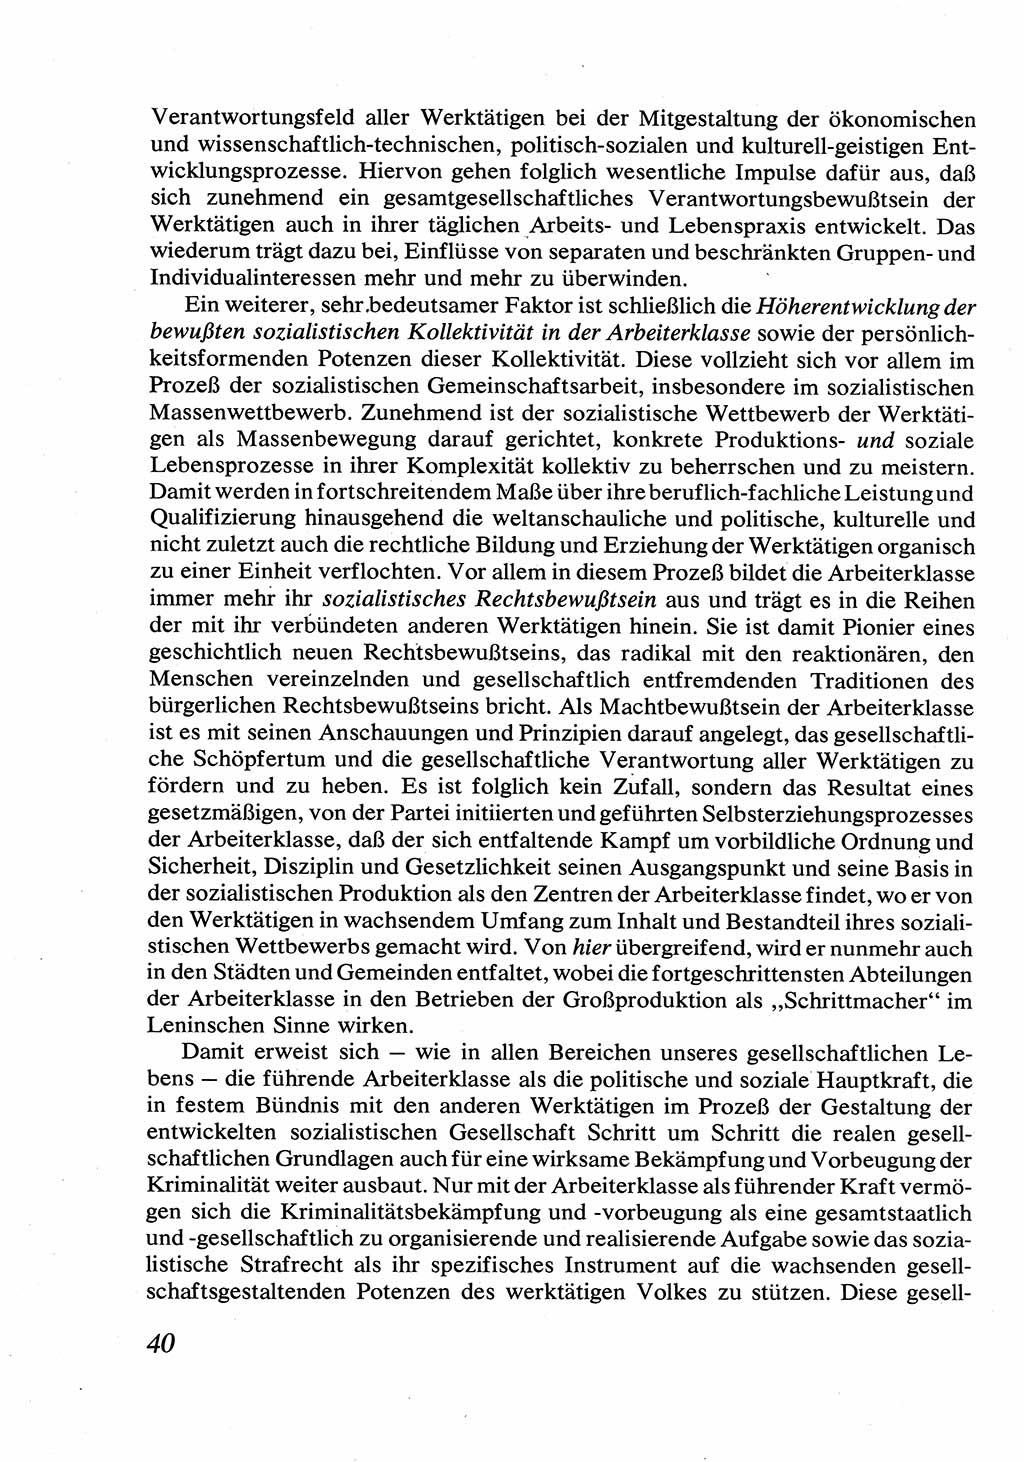 Strafrecht [Deutsche Demokratische Republik (DDR)], Allgemeiner Teil, Lehrbuch 1976, Seite 40 (Strafr. DDR AT Lb. 1976, S. 40)